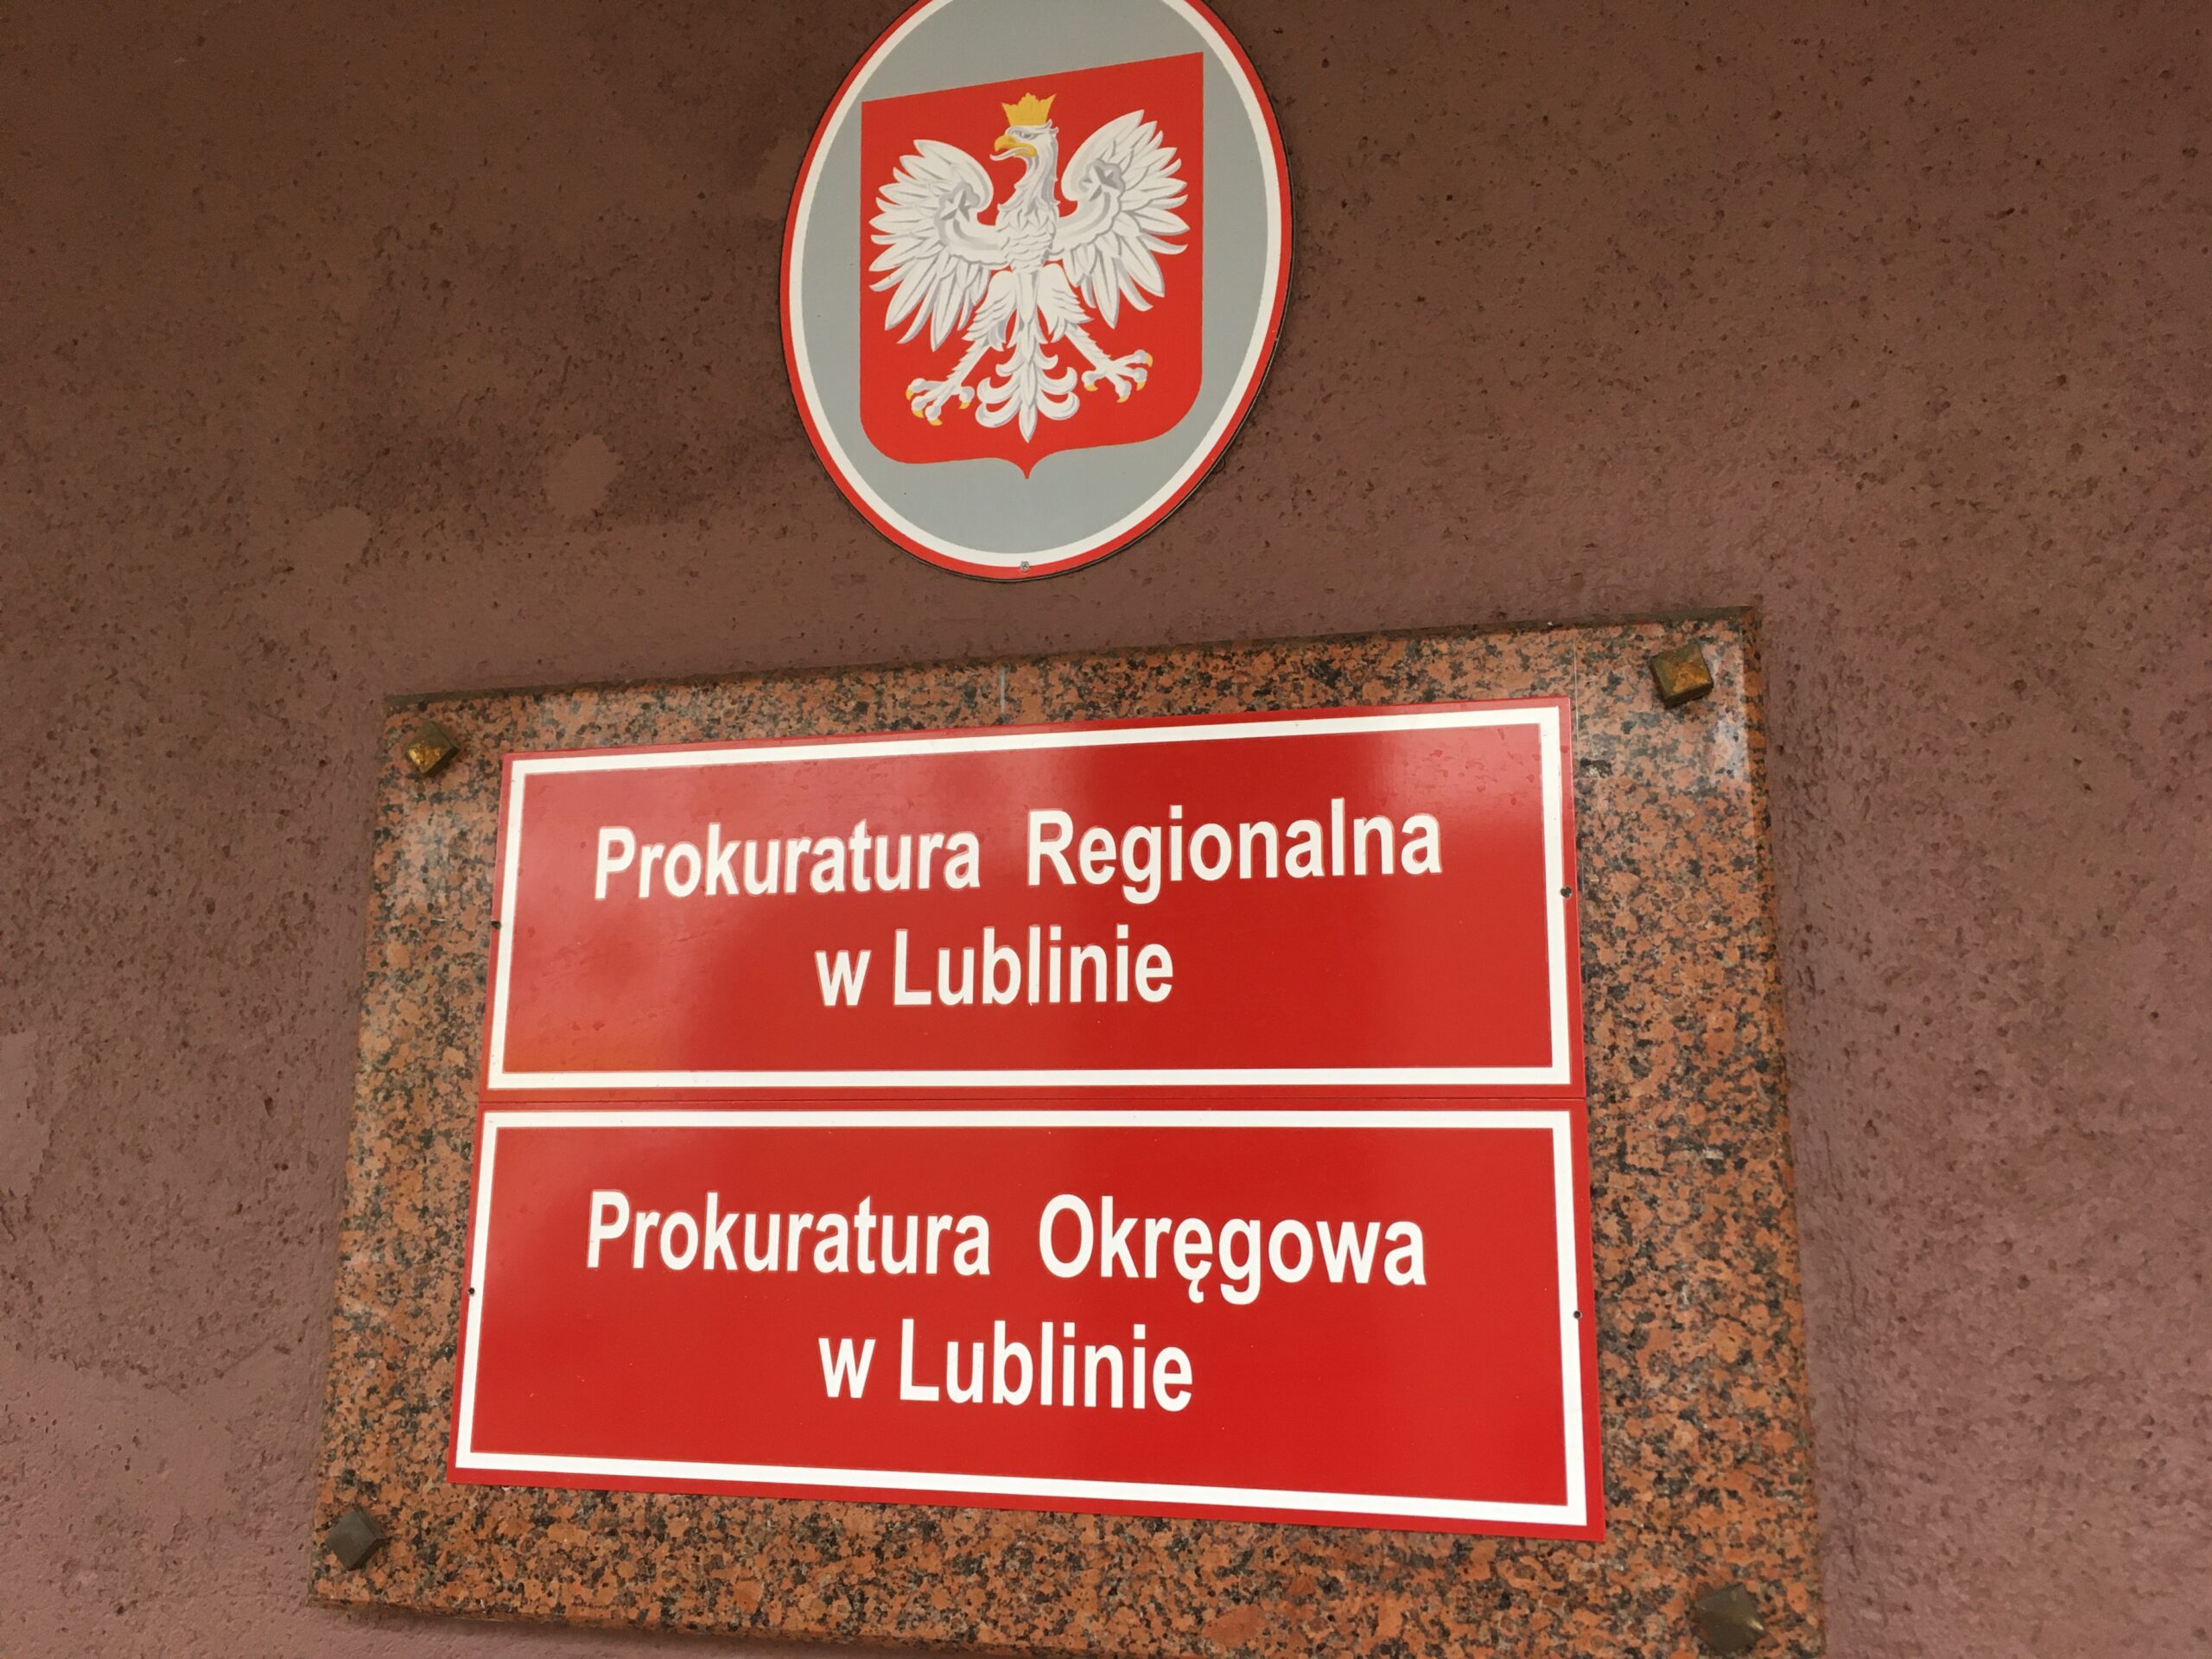 Prokuratura w Lublinie posiada pętlę przenośną do obsługi osób ze szczególnymi potrzebami w zakresie lepszego słyszenia